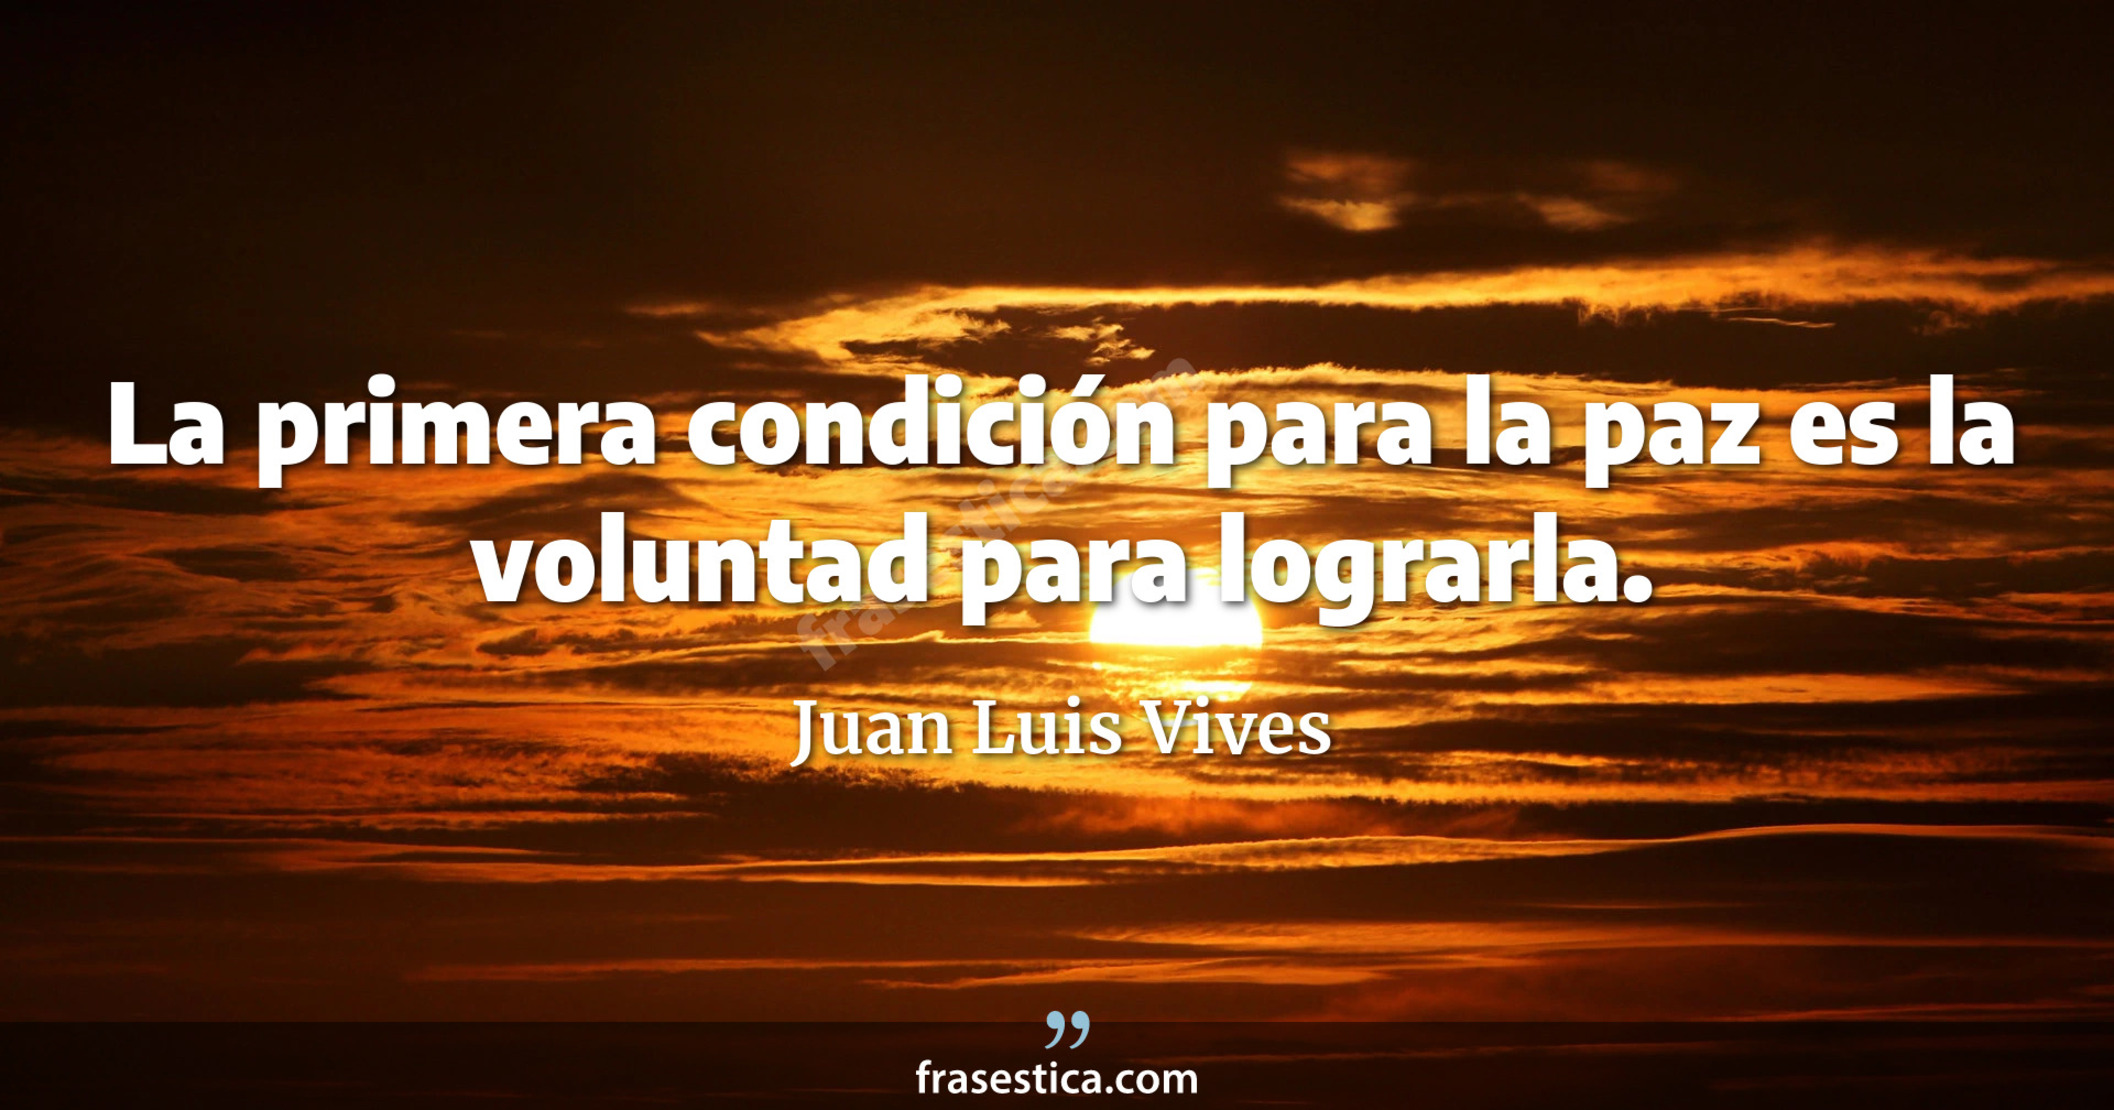 La primera condición para la paz es la voluntad para lograrla. - Juan Luis Vives